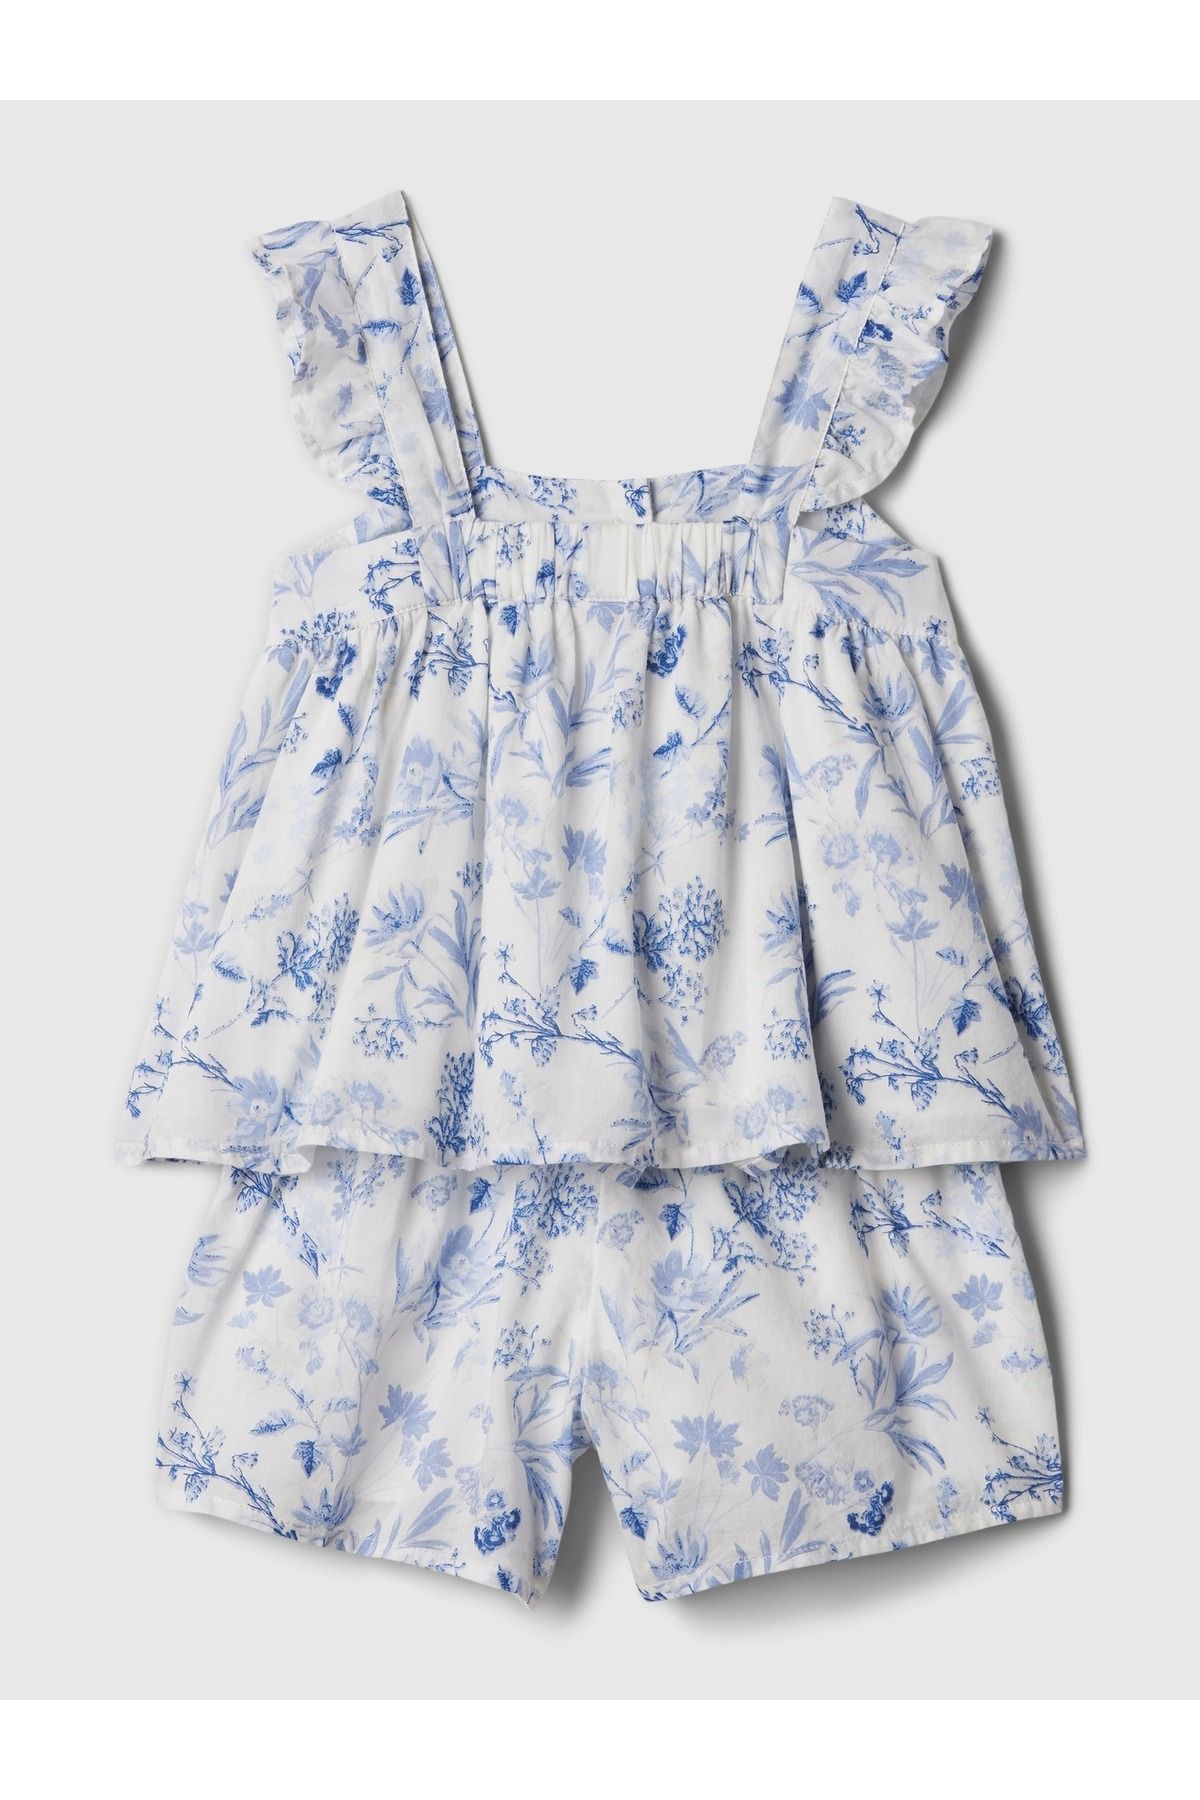 GAP Kız Bebek Açık Mavi Çiçek Desenli Outfit Set